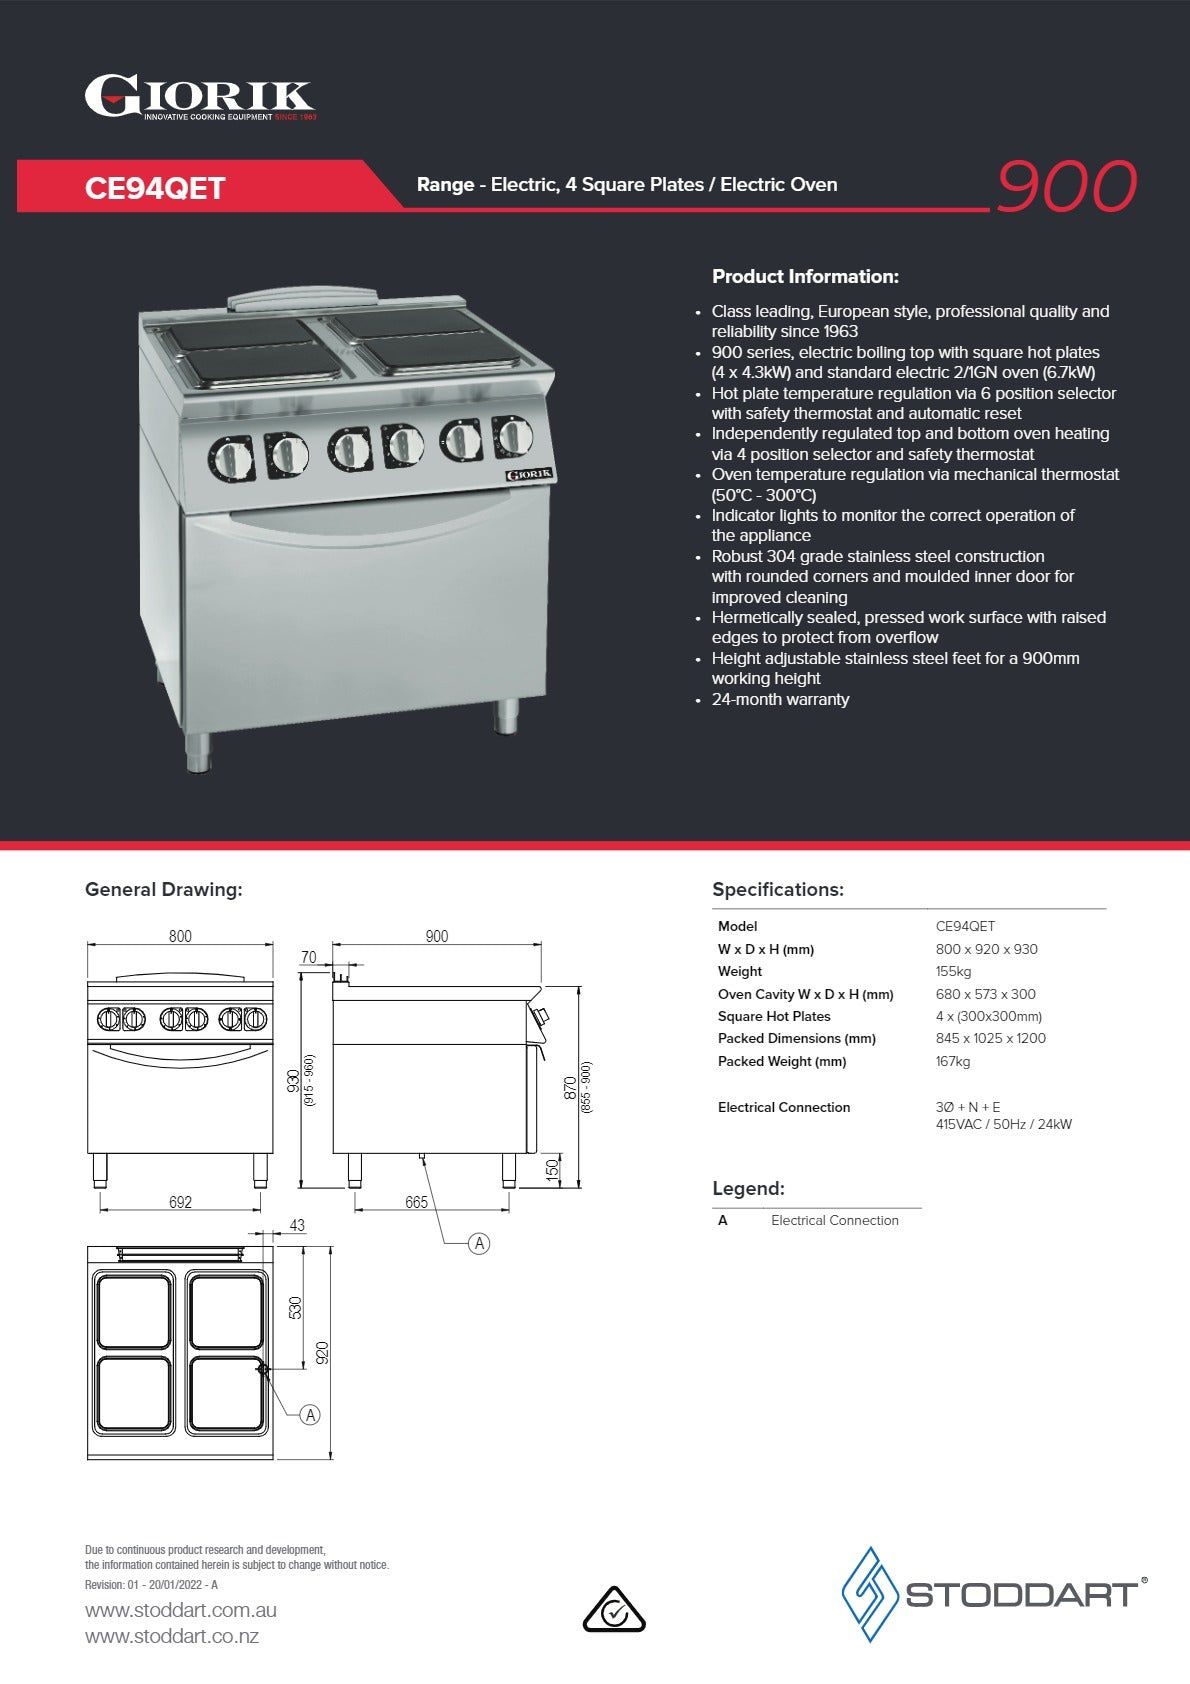 Thumbnail - Giorik CE94QET - Range Oven